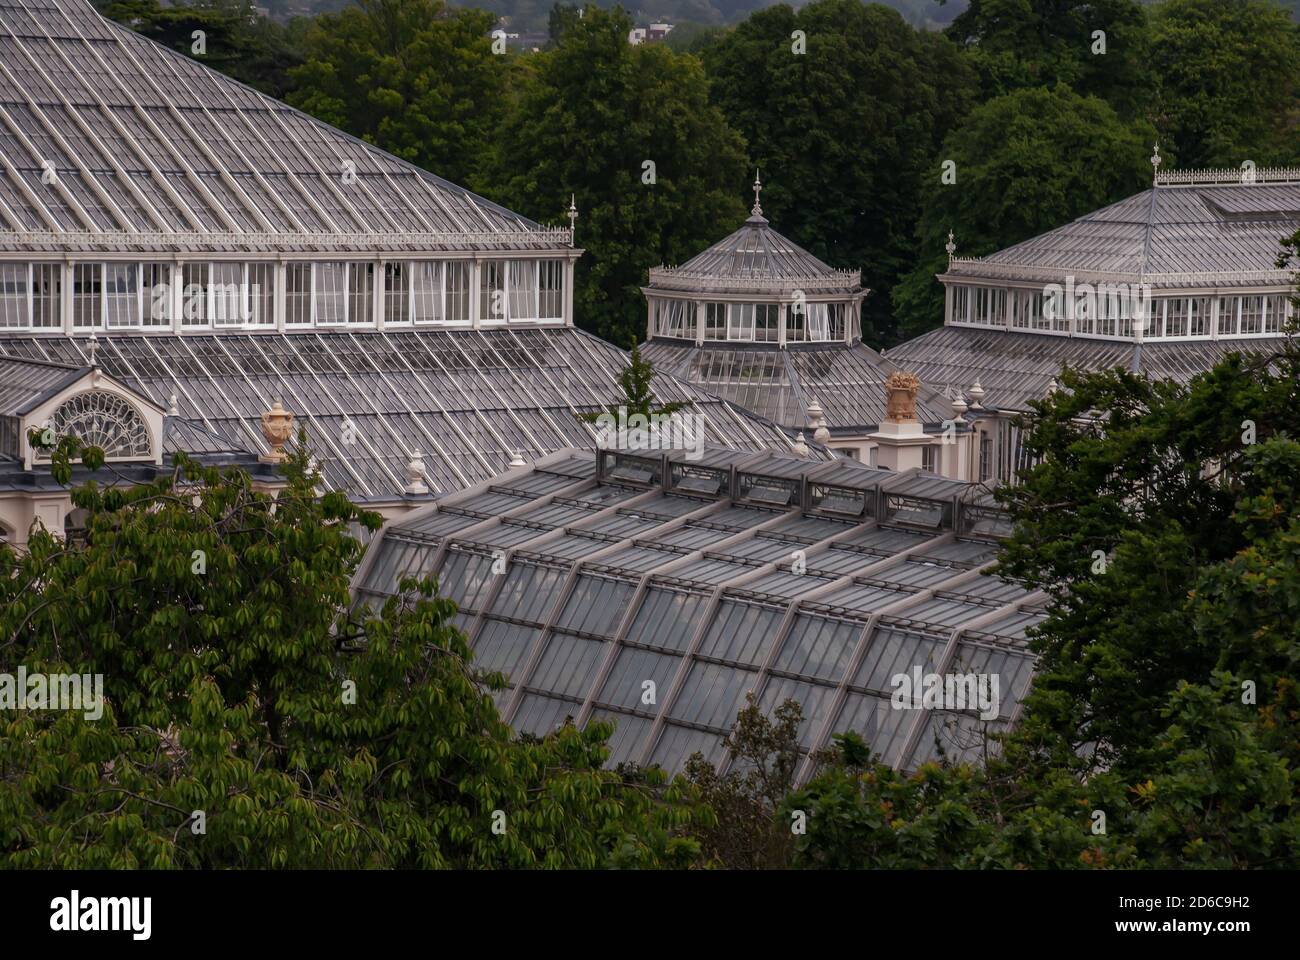 Londra, UK - 9 apr 2019 : Vista aerea sulla serra presso i Kew Gardens (Royal Botanic Gardens). Nessuna messa a fuoco, in particolare. Foto Stock